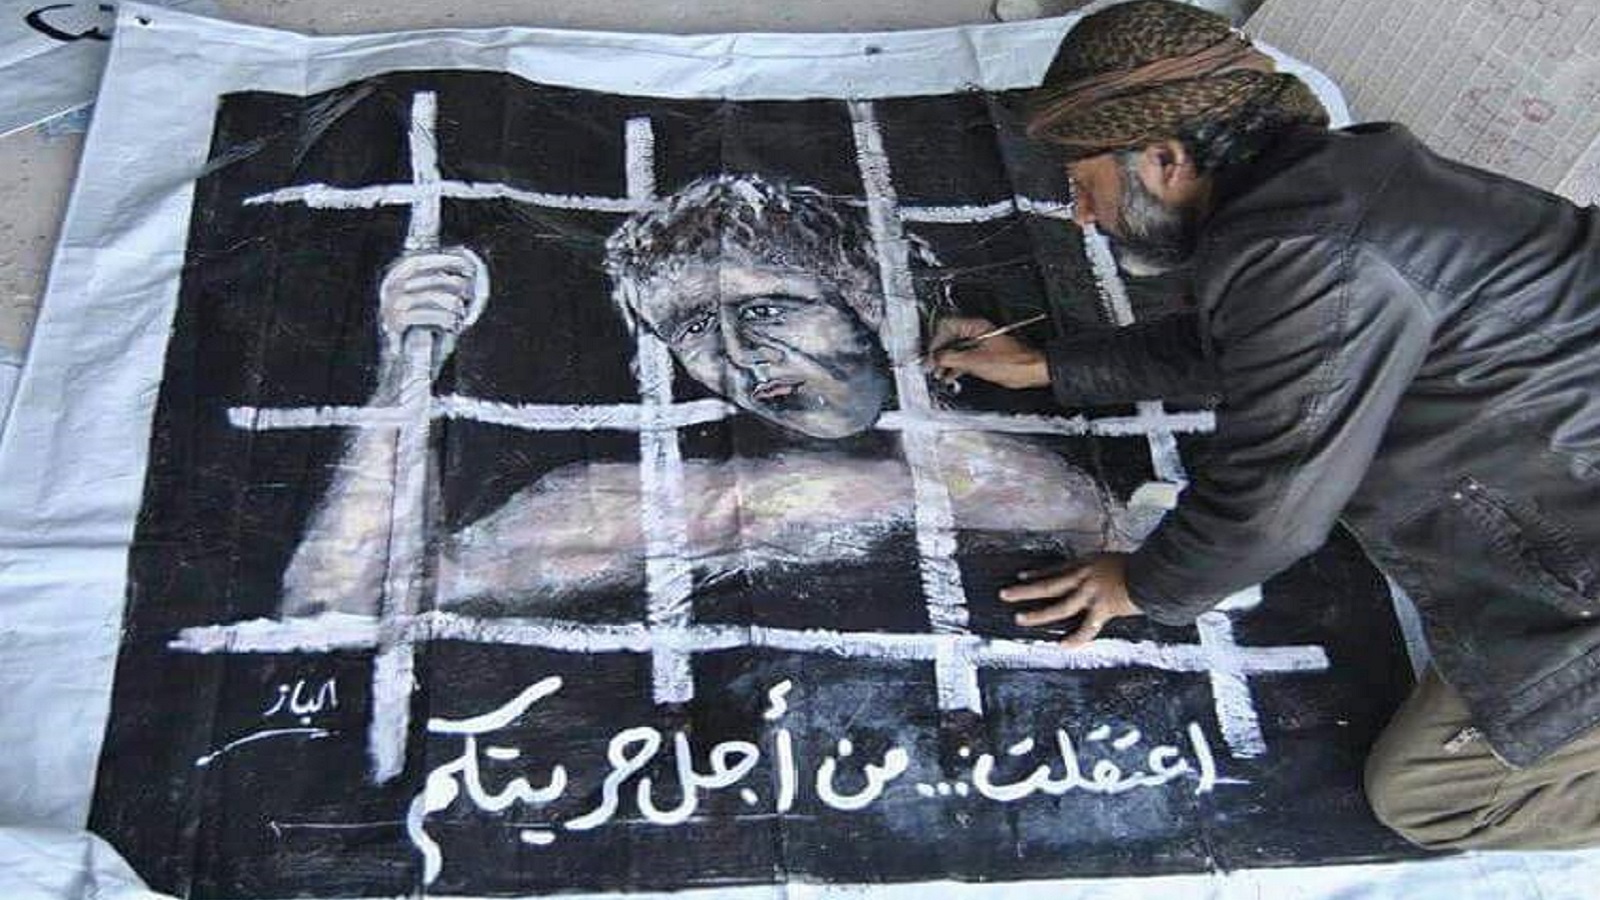 #شهداء_سوريون_تحت_التعذيب: 8 أيلول يوم معتقلي الثورة